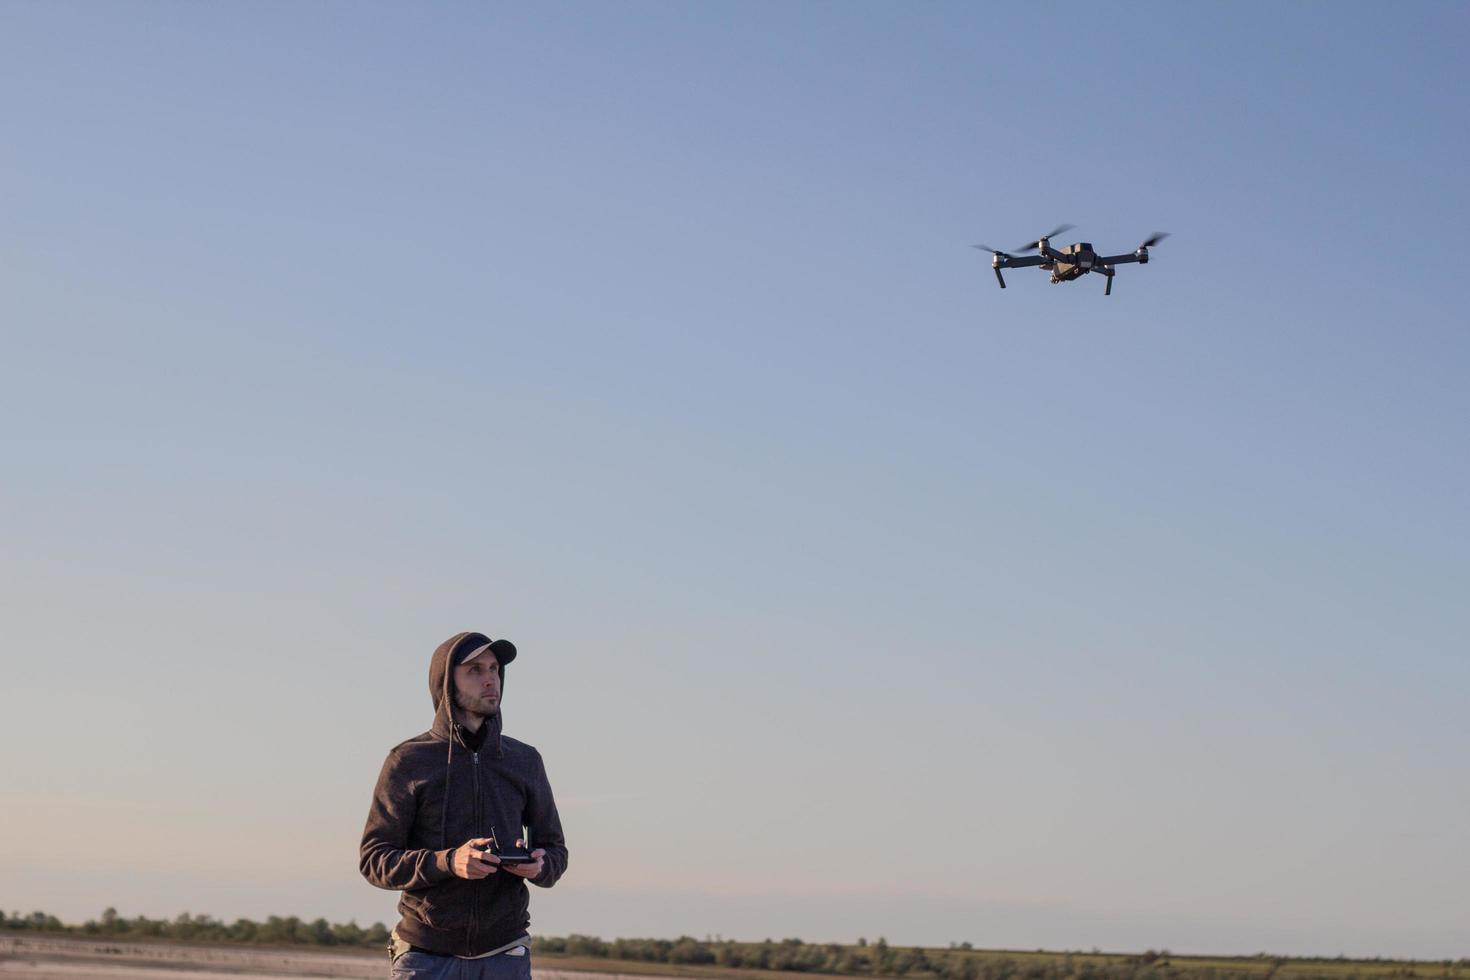 bild von schwarz schindendem quadrocopter dron und pilot siluette im sonnenuntergang hellen hintergrund, touristen nutzen dron hubschrauber zum fotografieren oder filmen von wüstenlandschaften foto